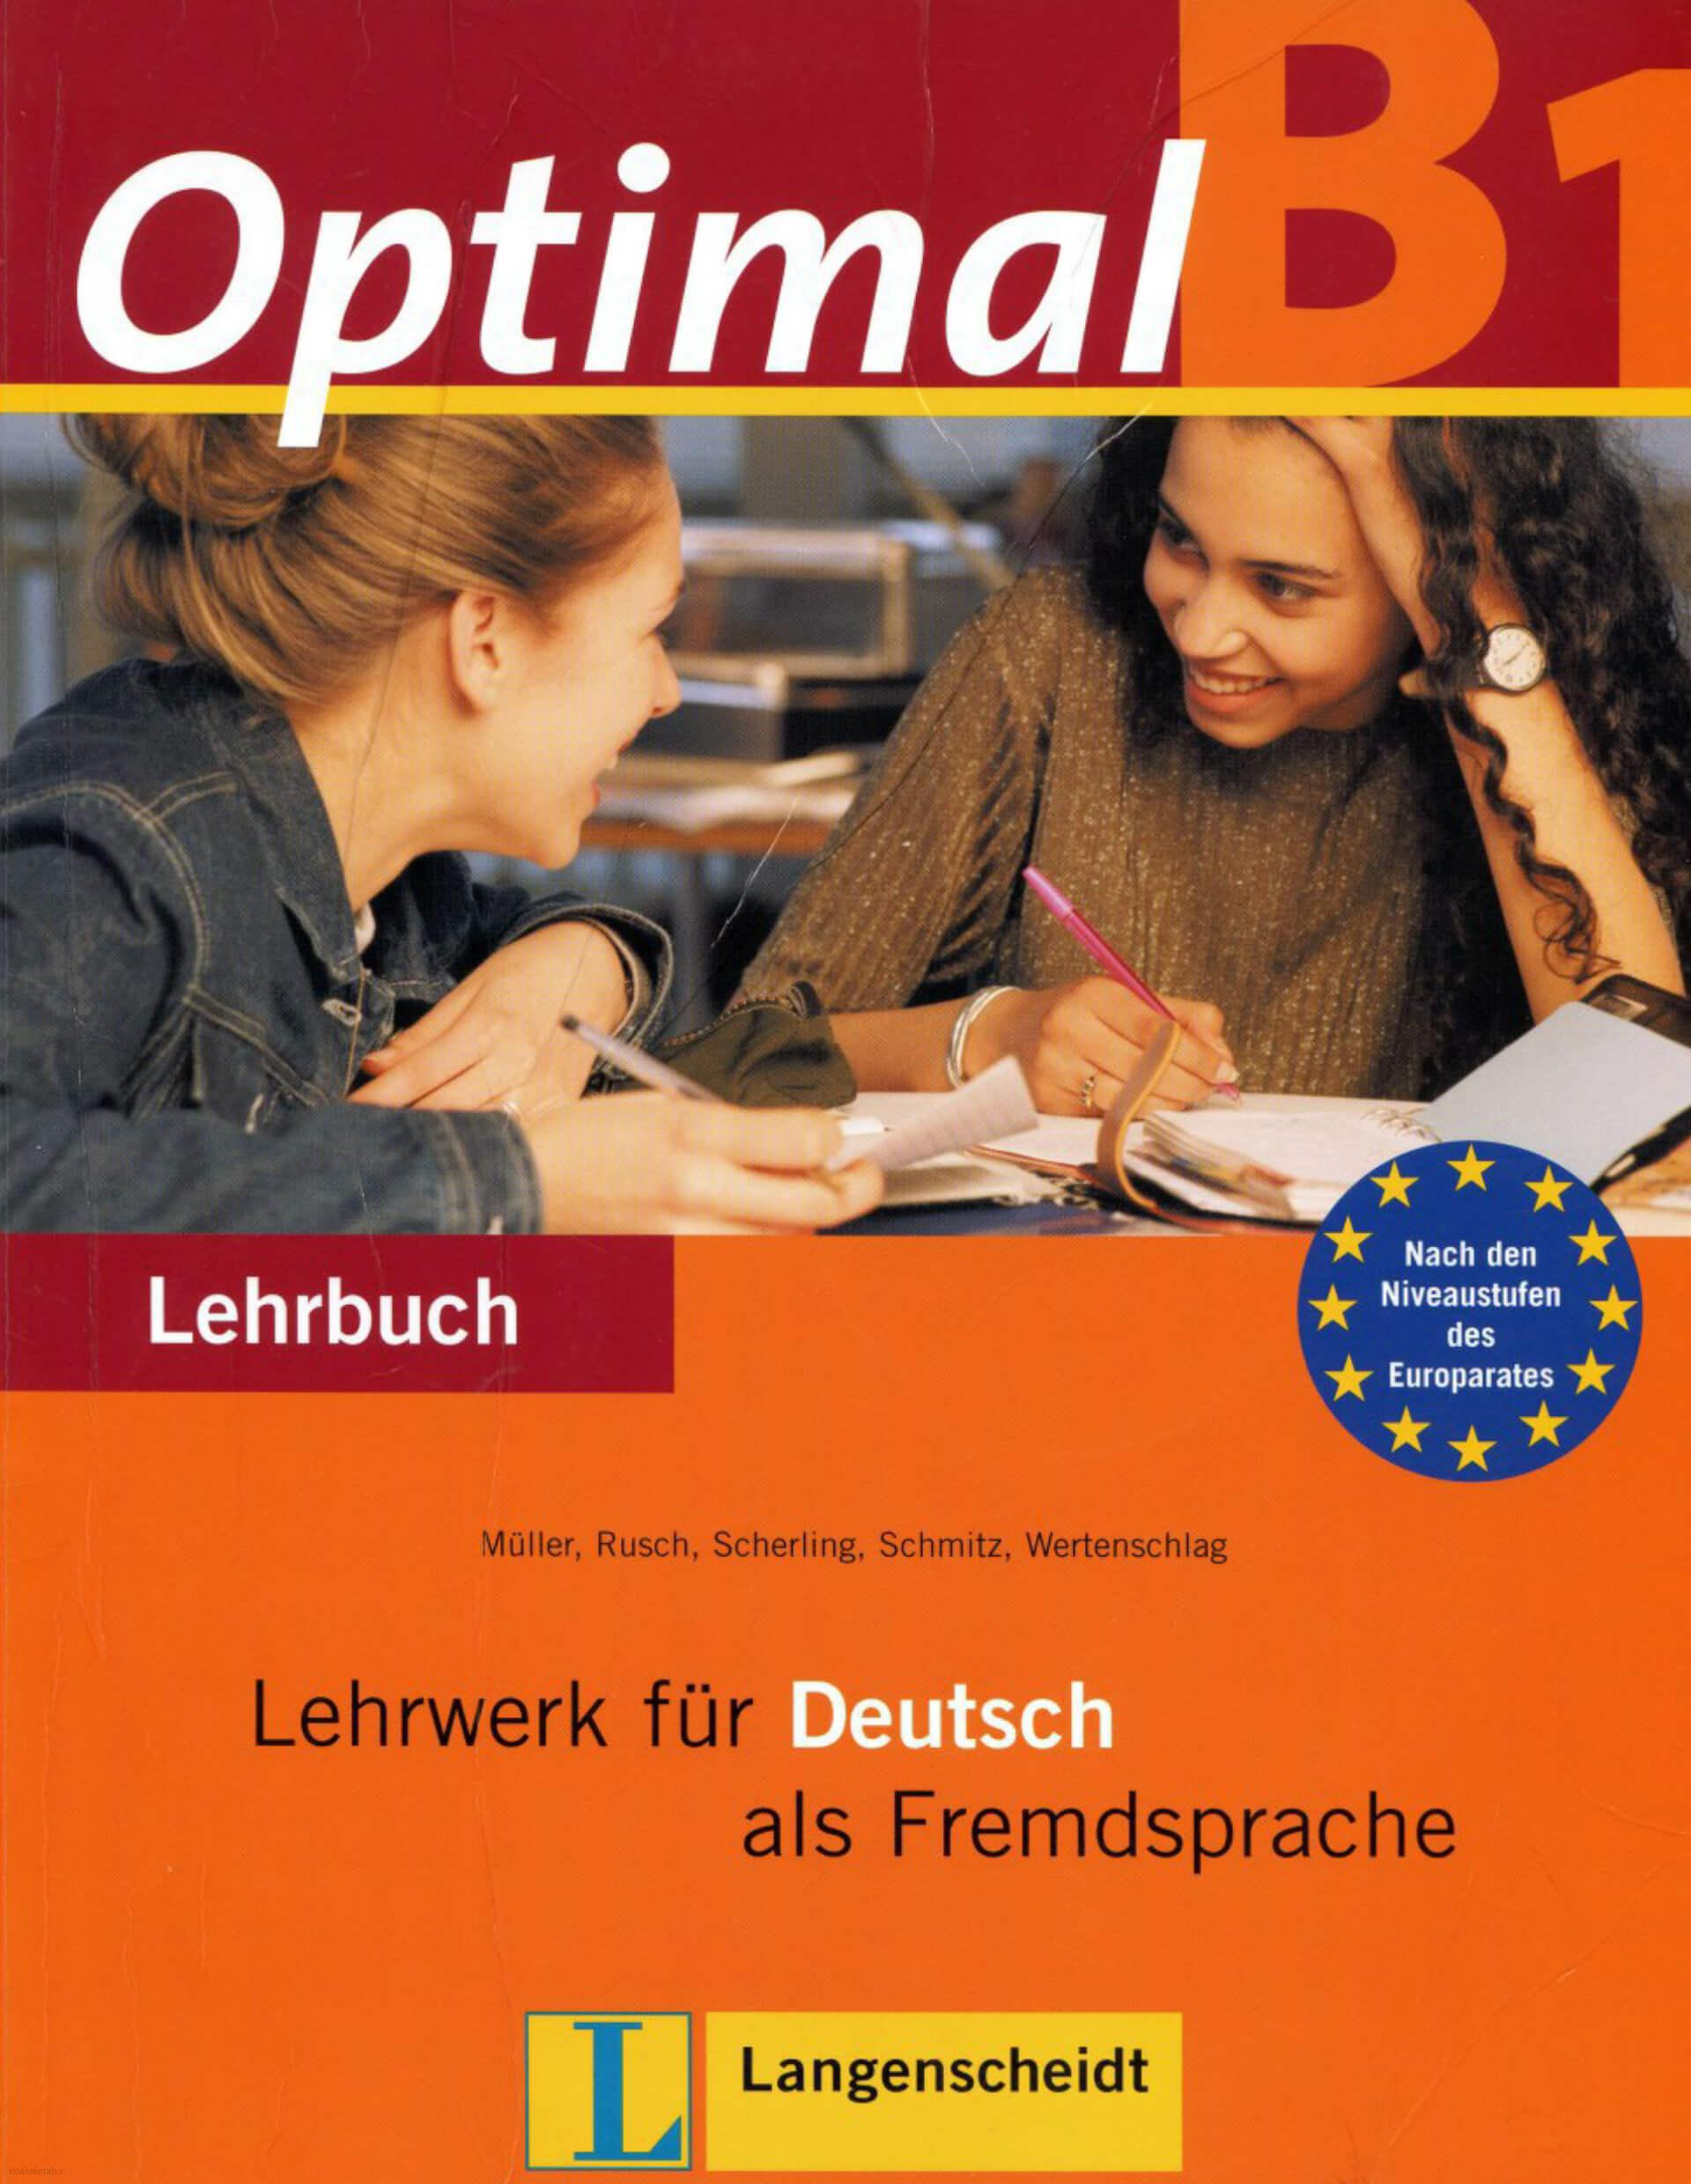 دانلود کتاب آلمانیoptimal b1